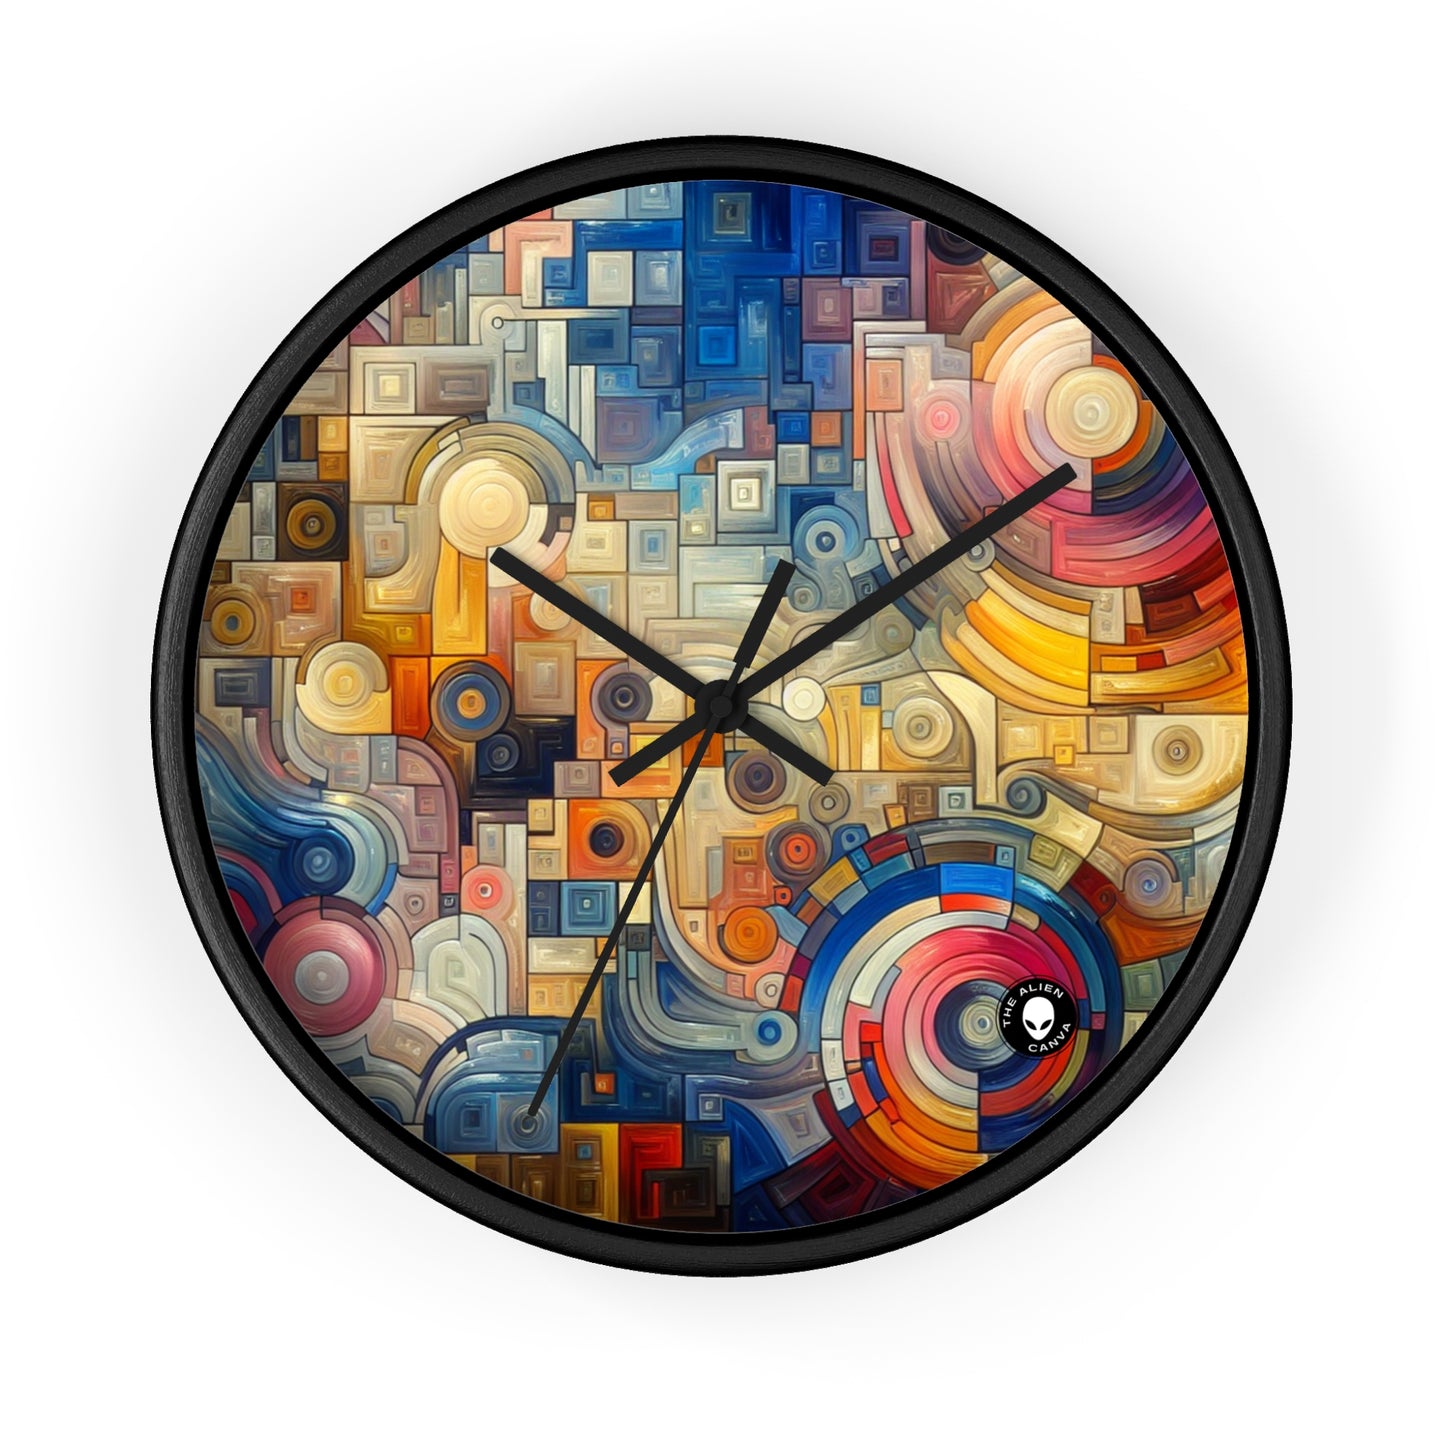 "Ritmos de la ciudad nocturna: una exploración urbana abstracta" - El arte abstracto del reloj de pared alienígena